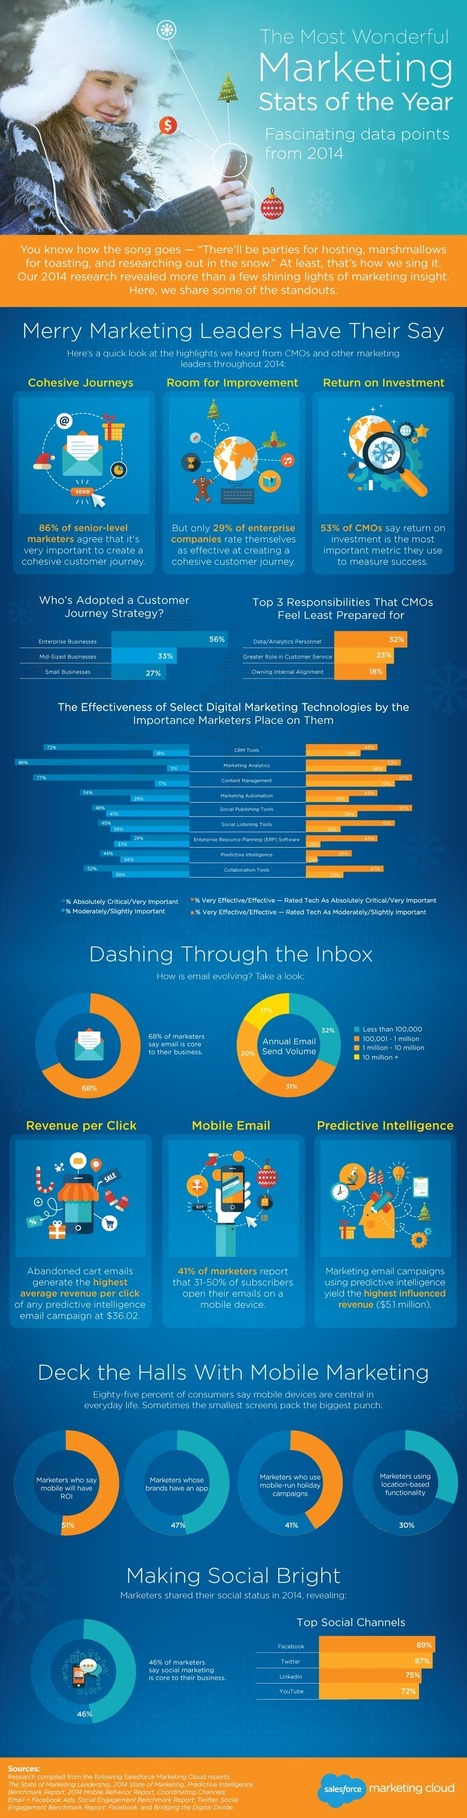 14 estadísticas sobre marketing digital en 2014 #infografia #infographic #marketing | Seo, Social Media Marketing | Scoop.it